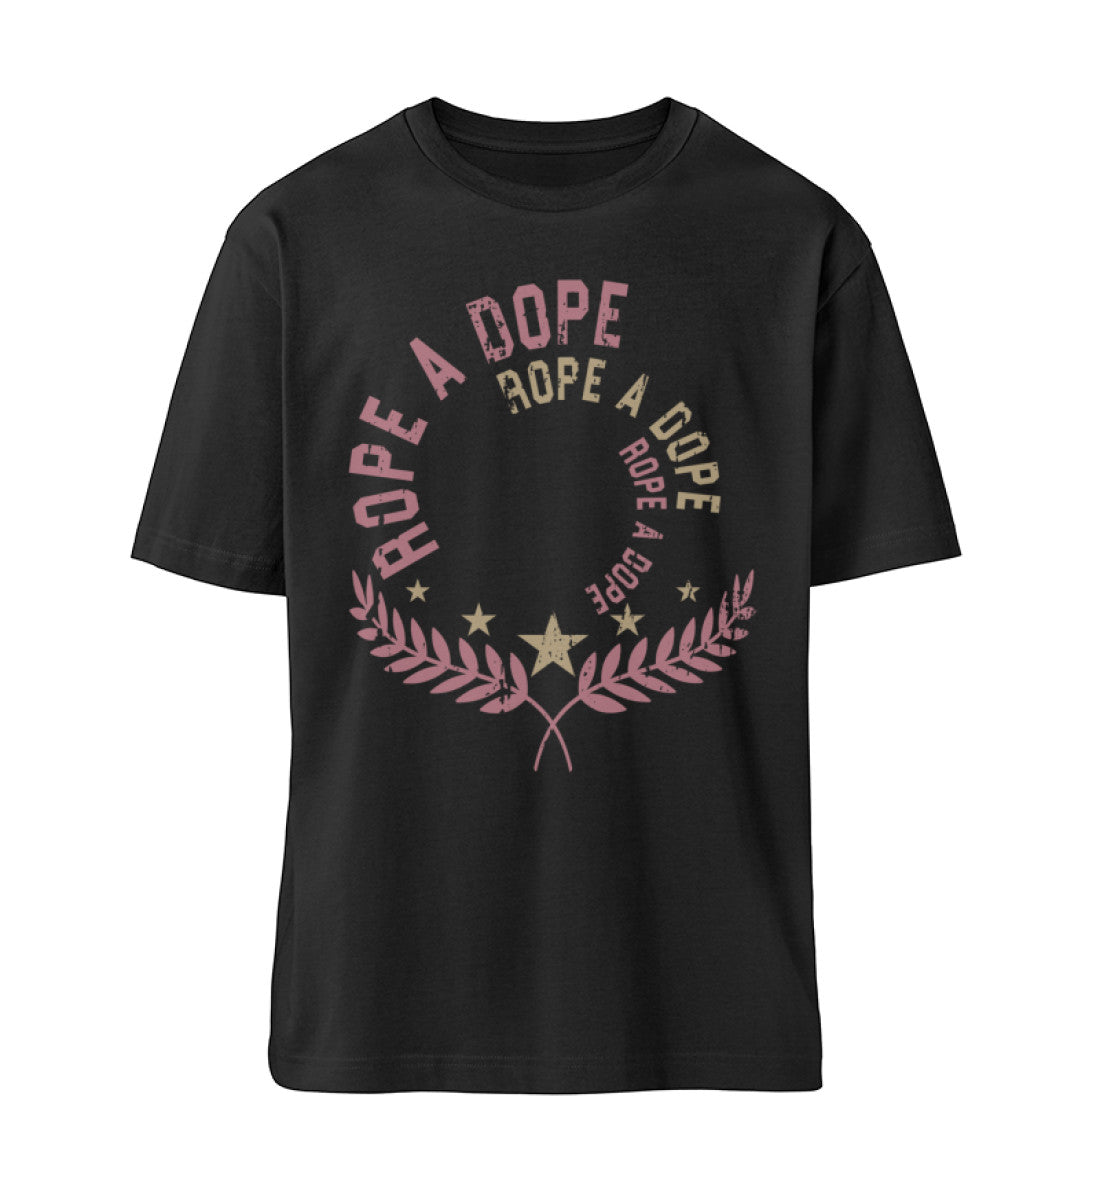 Schwarzes T-Shirt Unisex Relaxed Fit für Frauen und Männer bedruckt mit dem Design der Roger Rockawoo Clothing Kollektion Boxing Rope A Dope